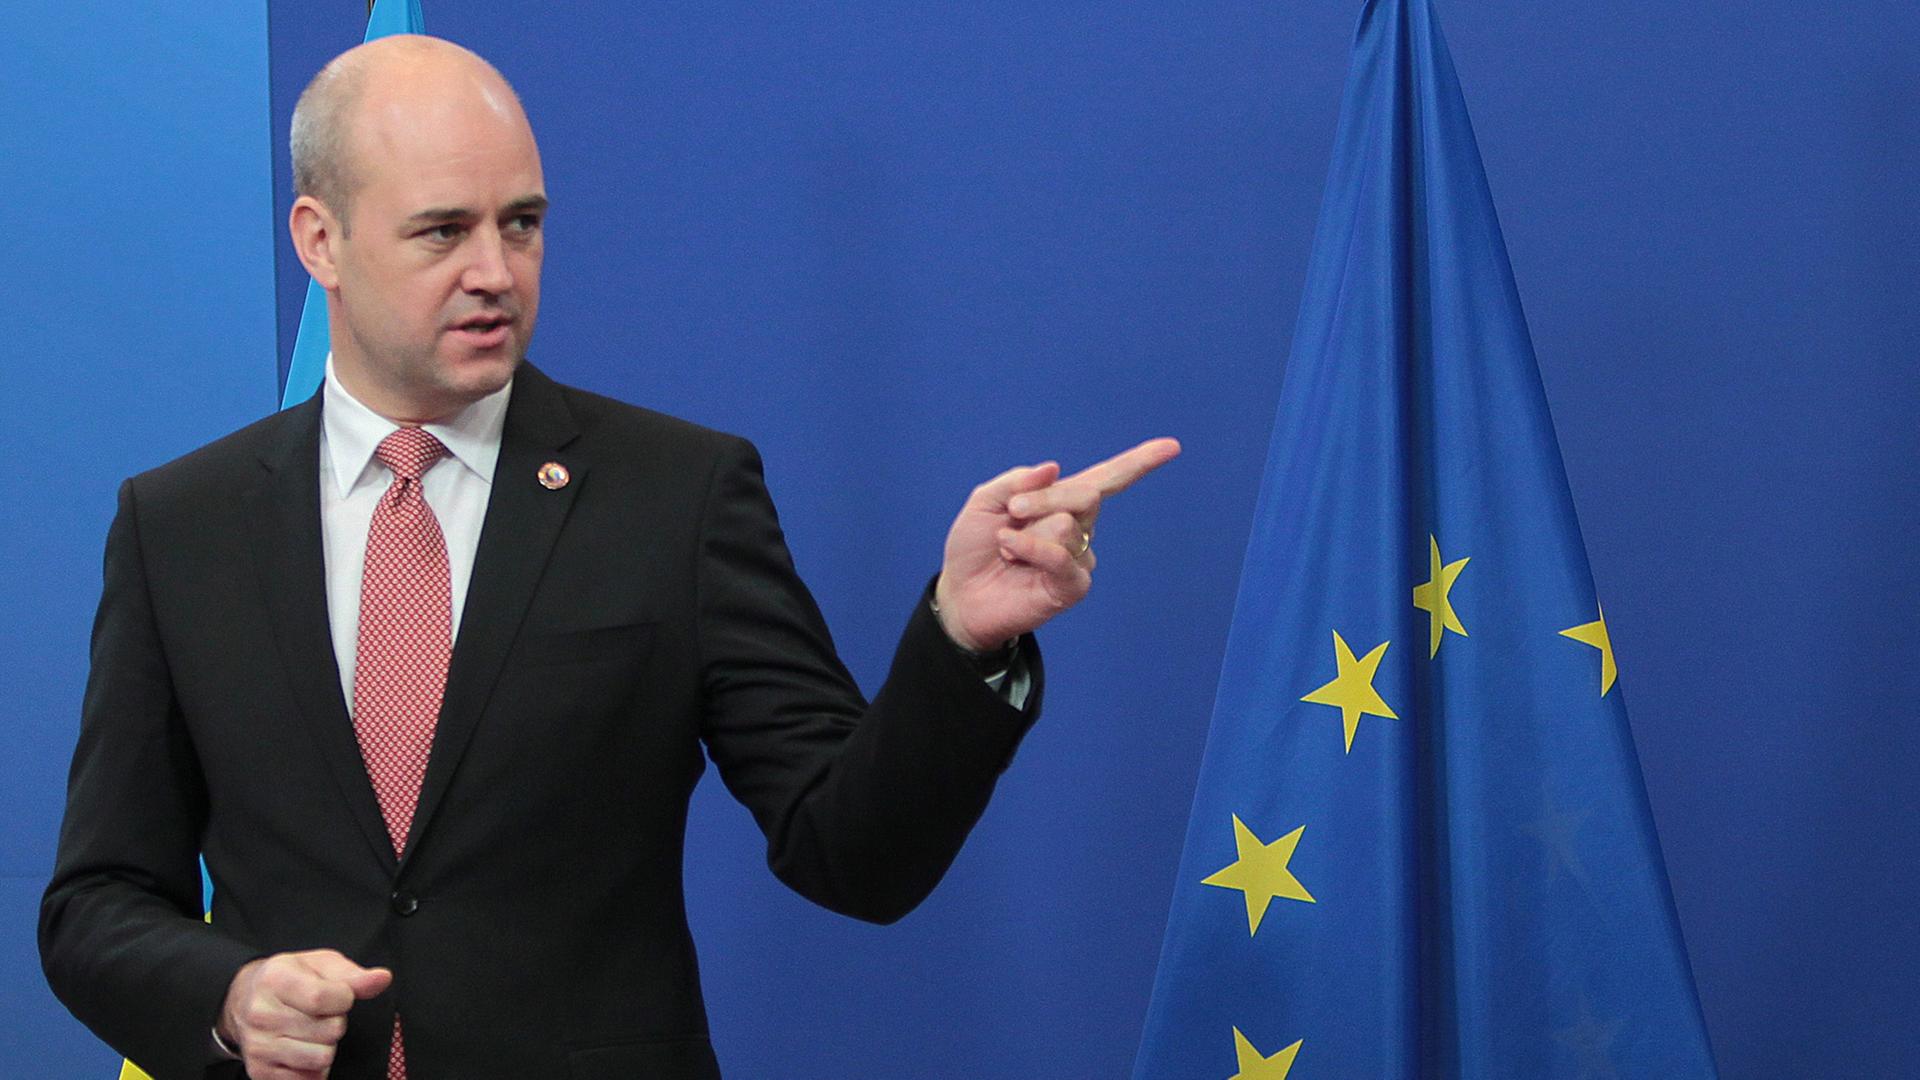 Schwedens Ministerpräsident Fredrik Reinfeldt, im Hintergrund eine Euro-Fahne